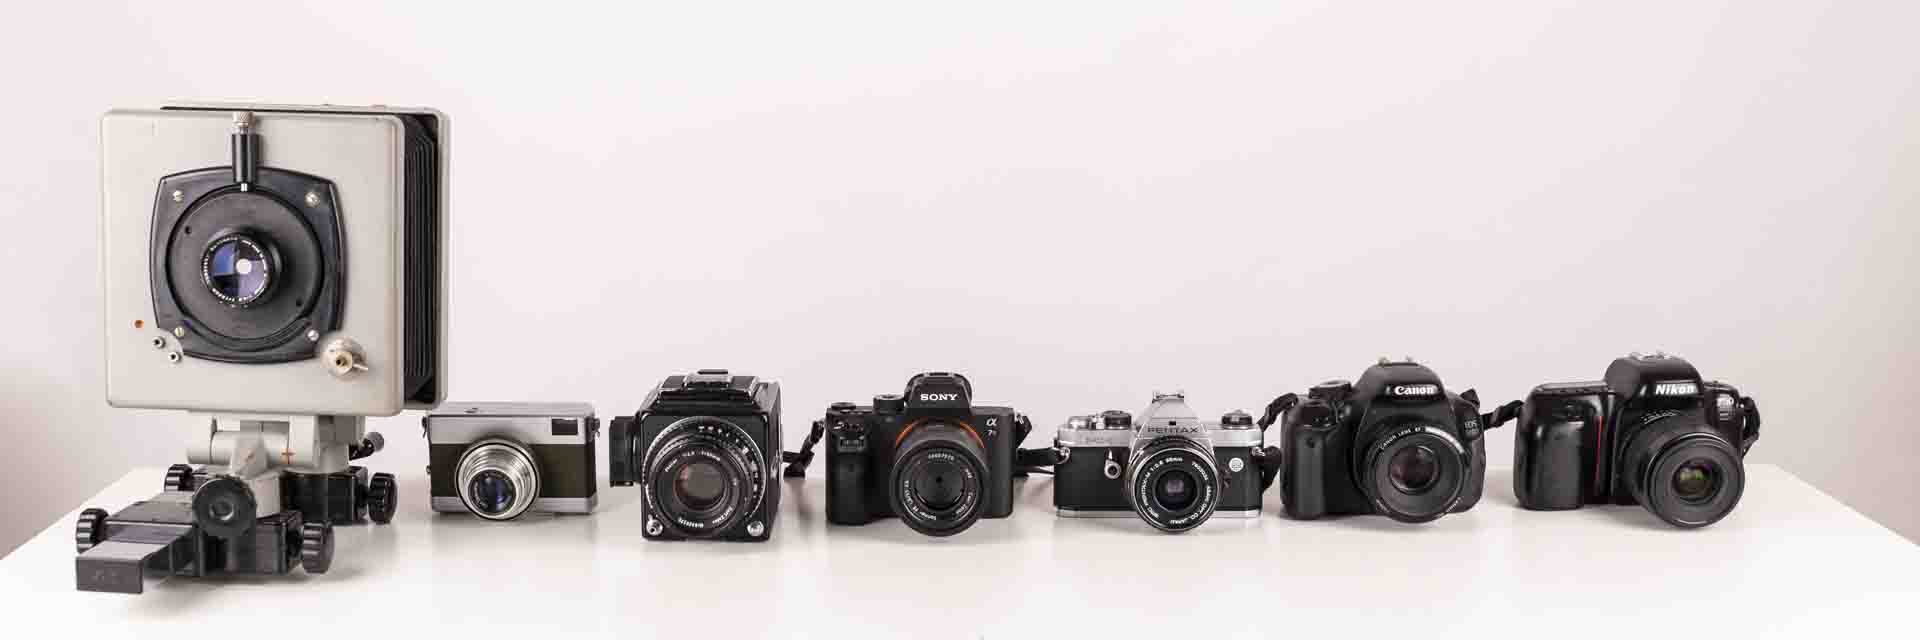 9. Suggerimenti per scattare foto con una fotocamera professionale